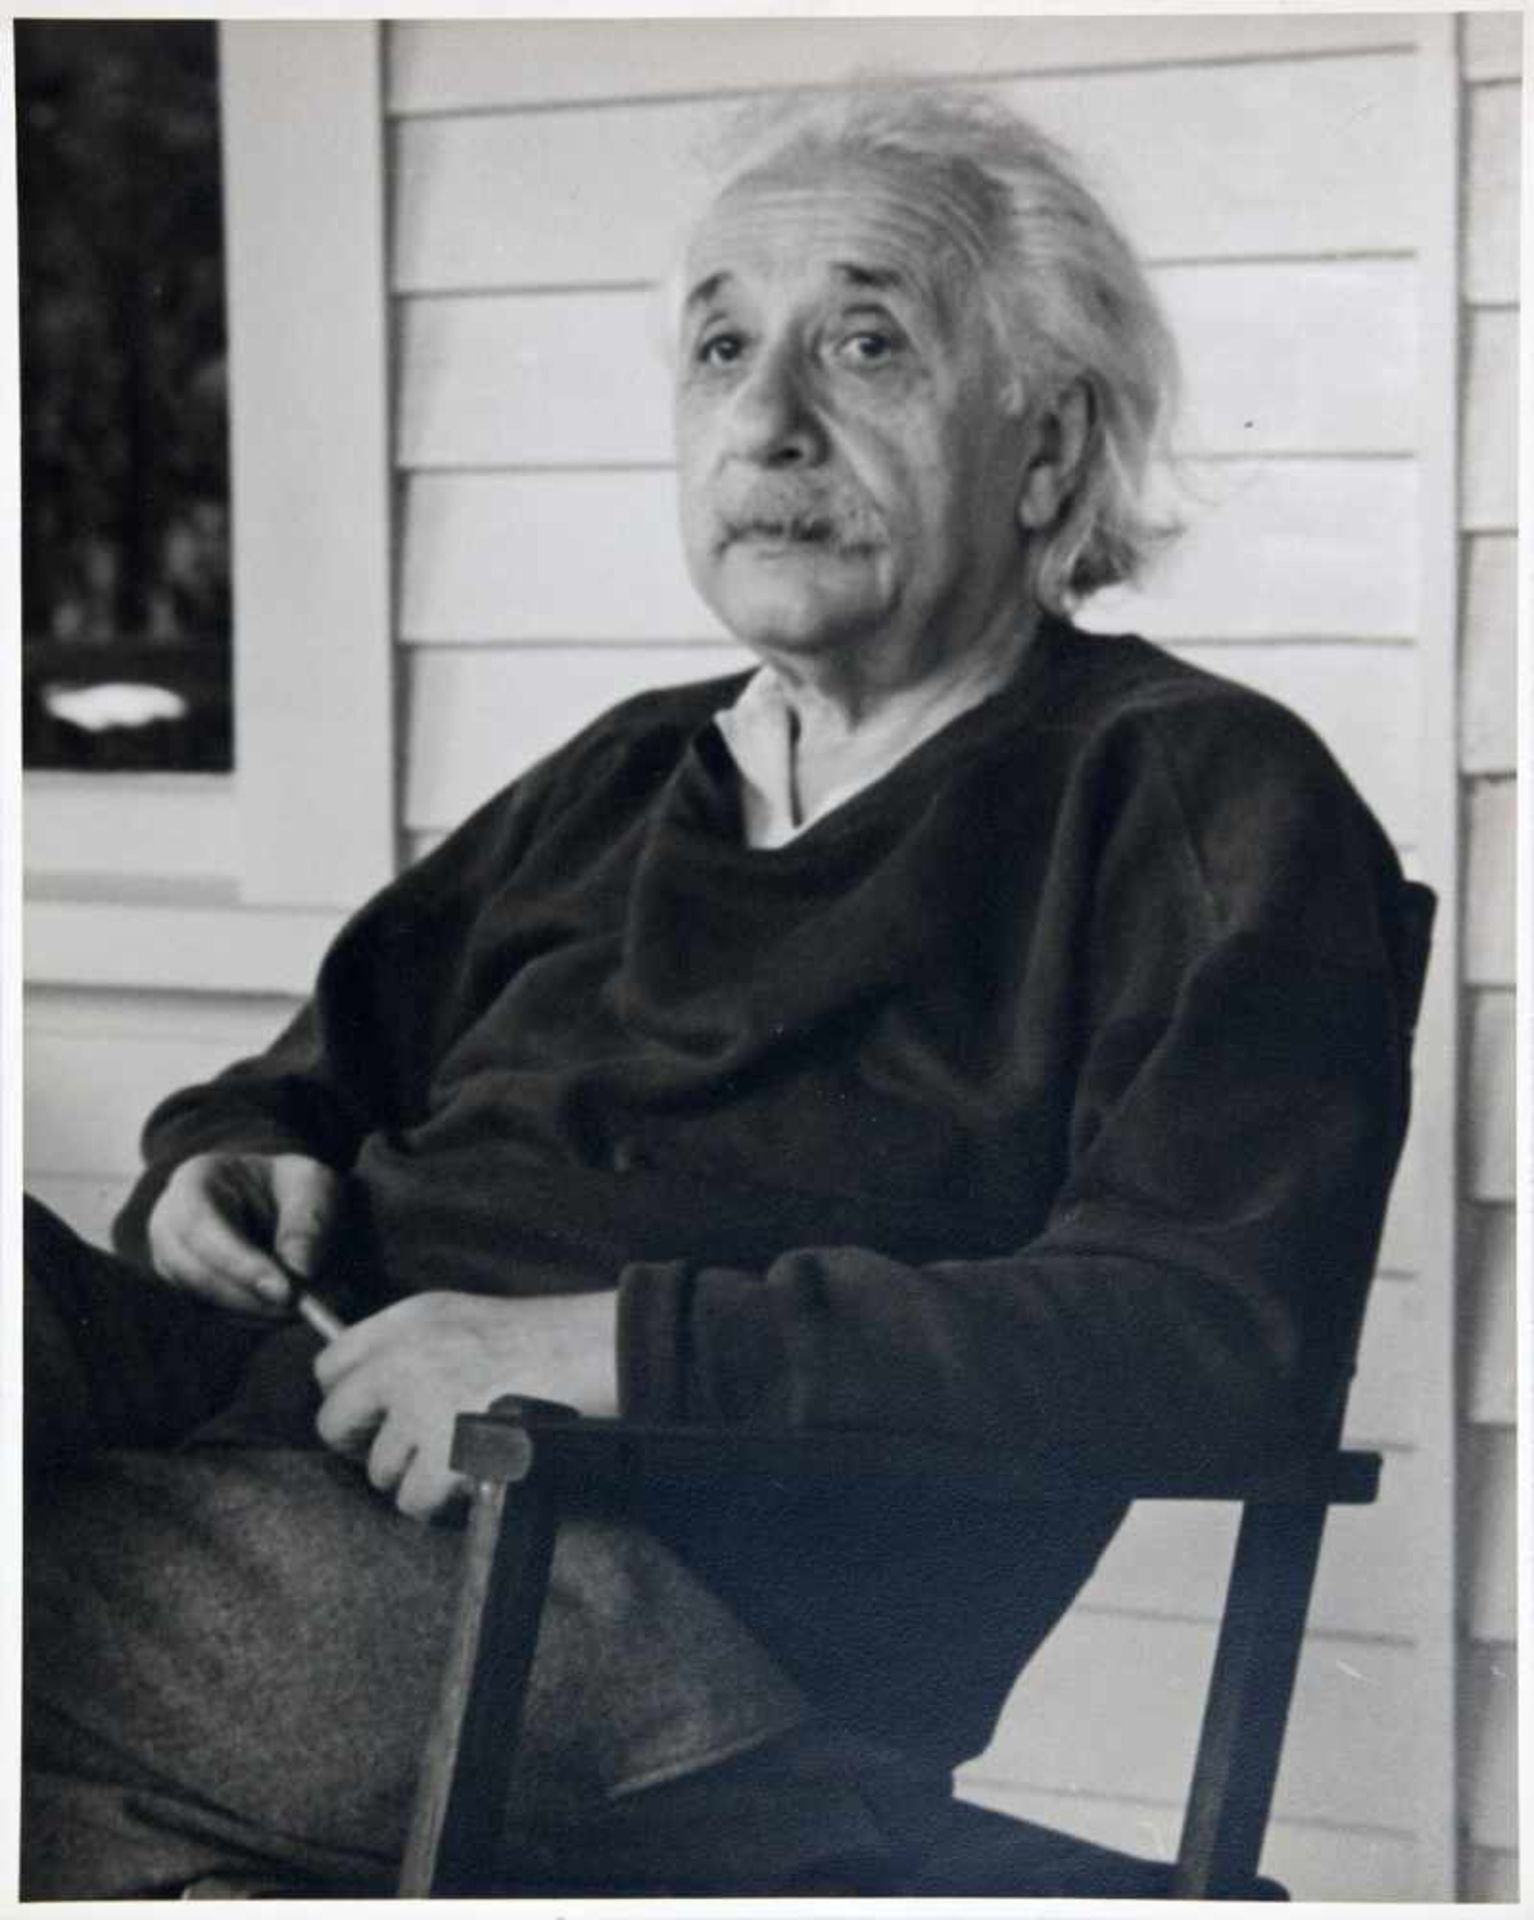 John D. Schiff. Albert Einstein. Fotografie. Vintage (Silbergelatine). Um 1950. 25 : 20 cm. Porträt.